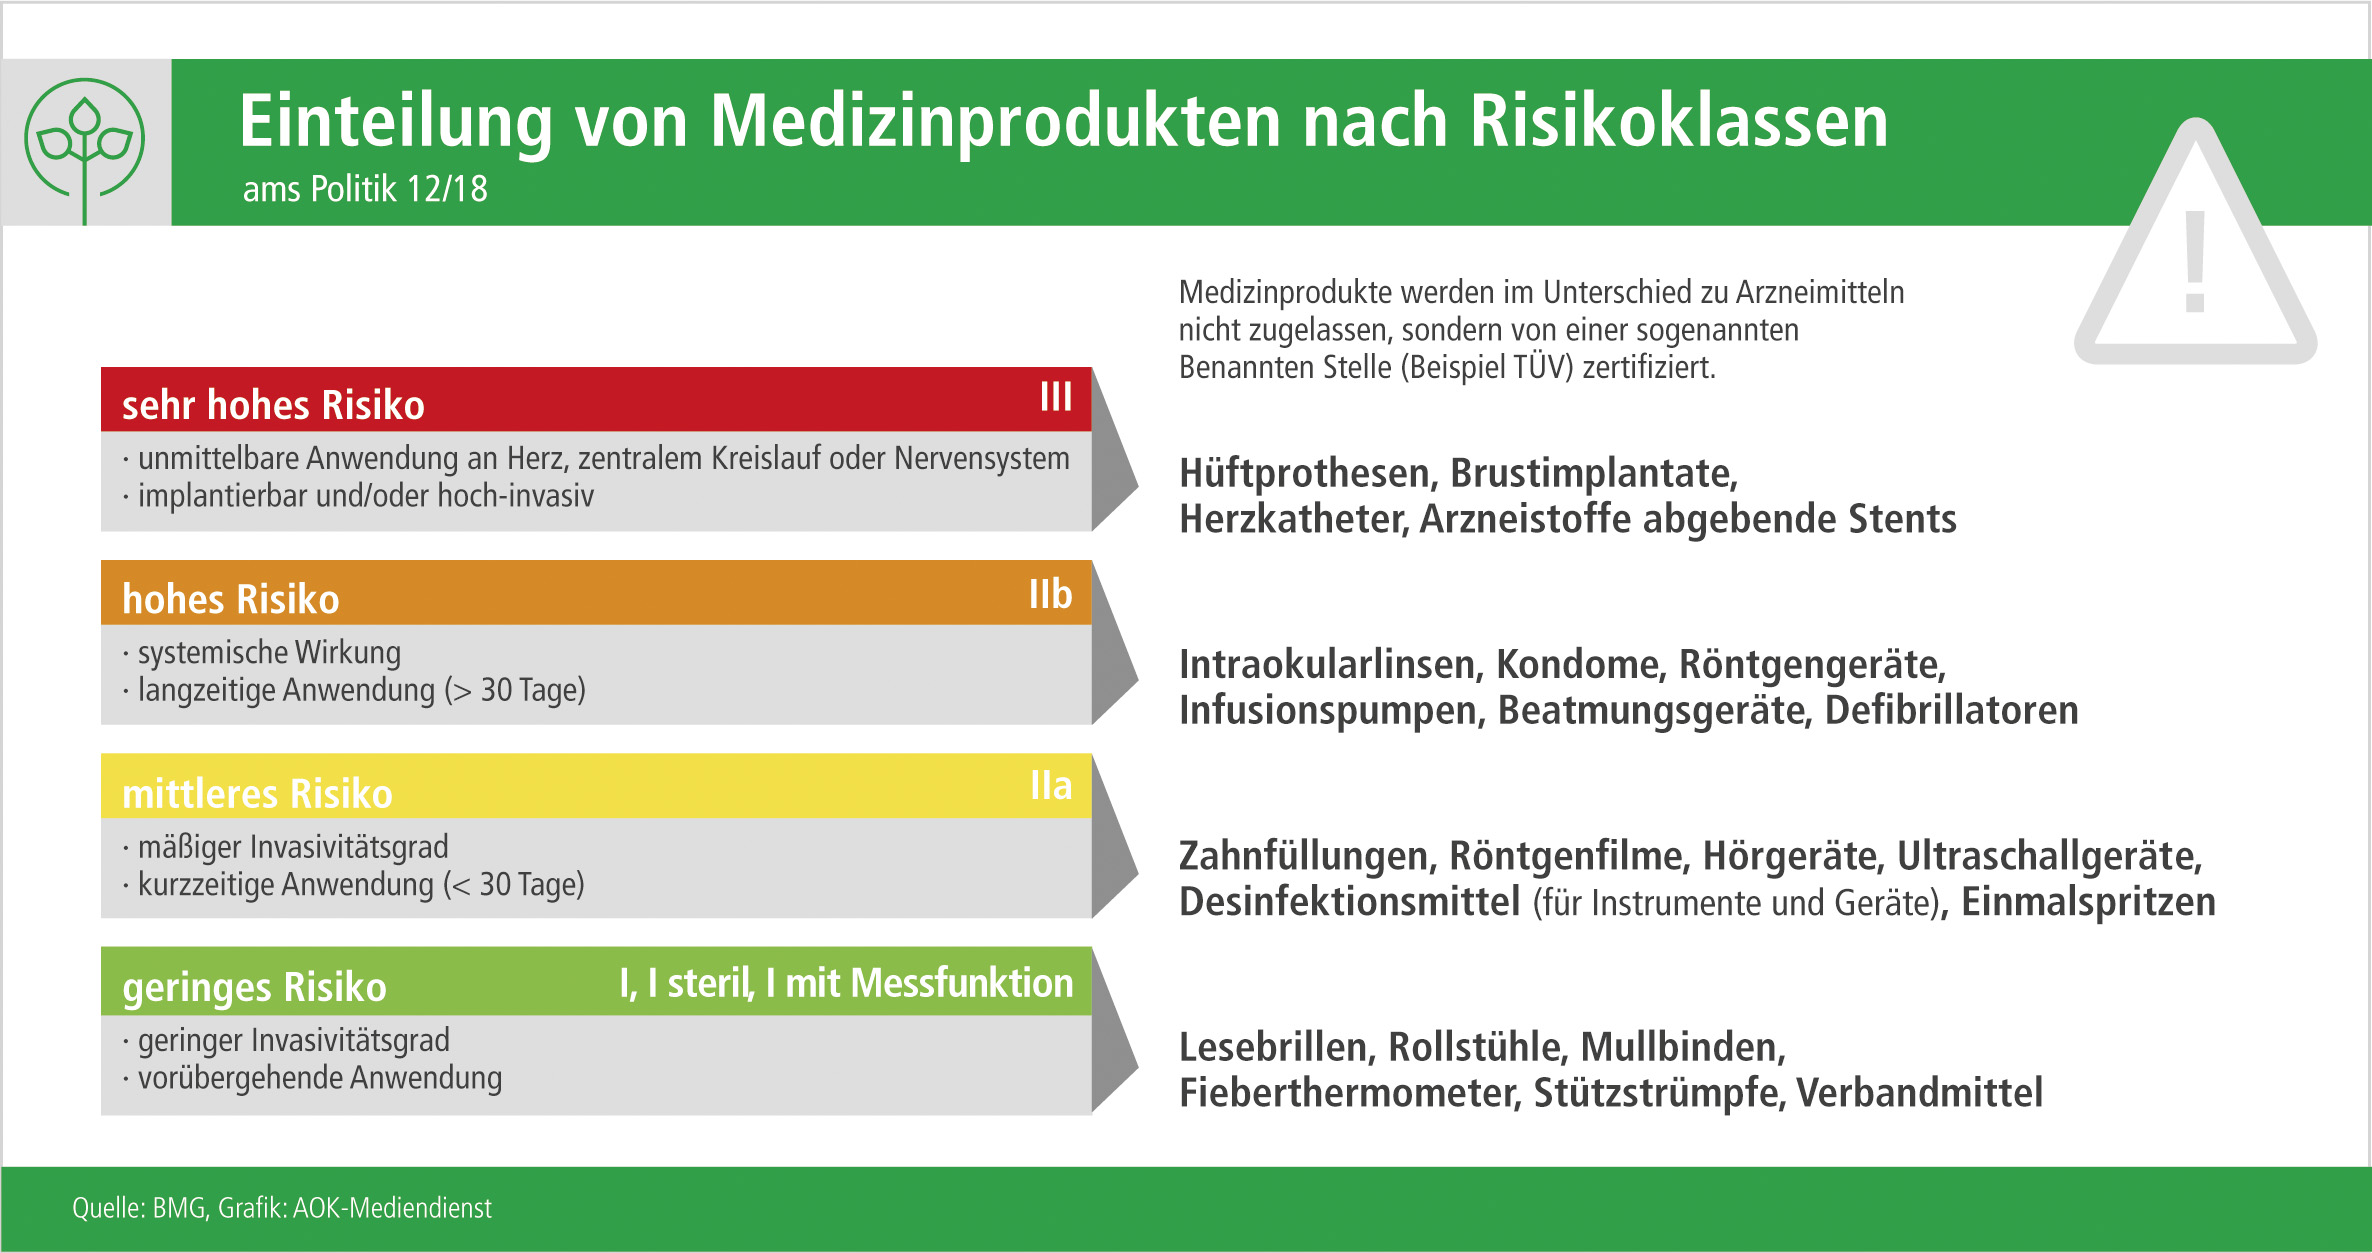 Einteilung Medizinprodukte nach Risikoklassen (Quelle BMG, Grafik AOK-Mediendienst))